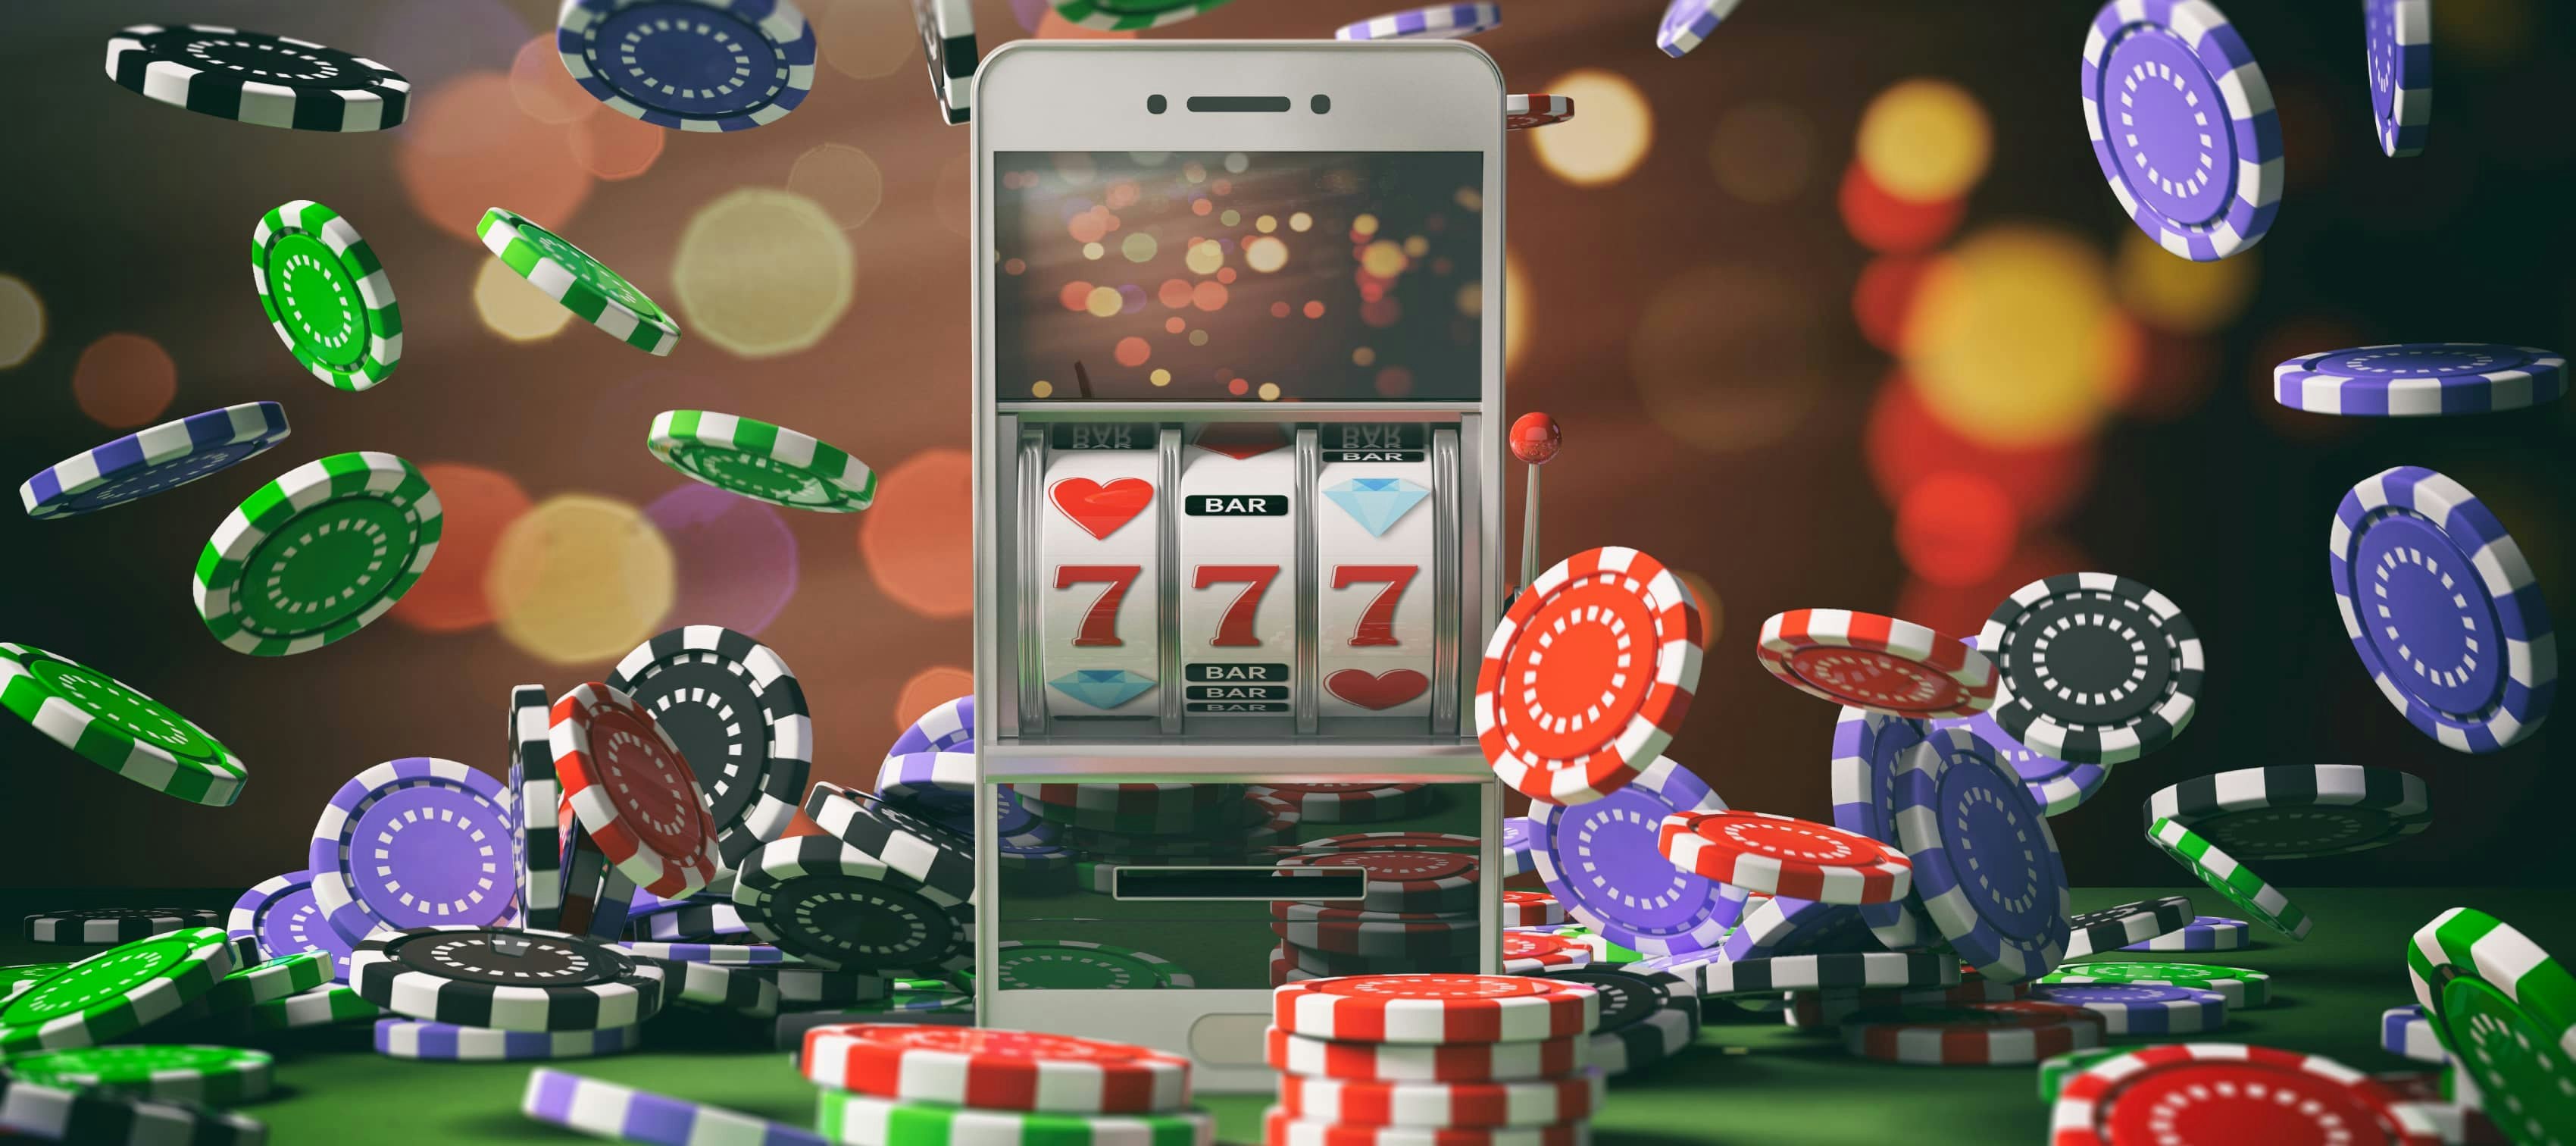 Pro gambler tips on how to make money gambling!